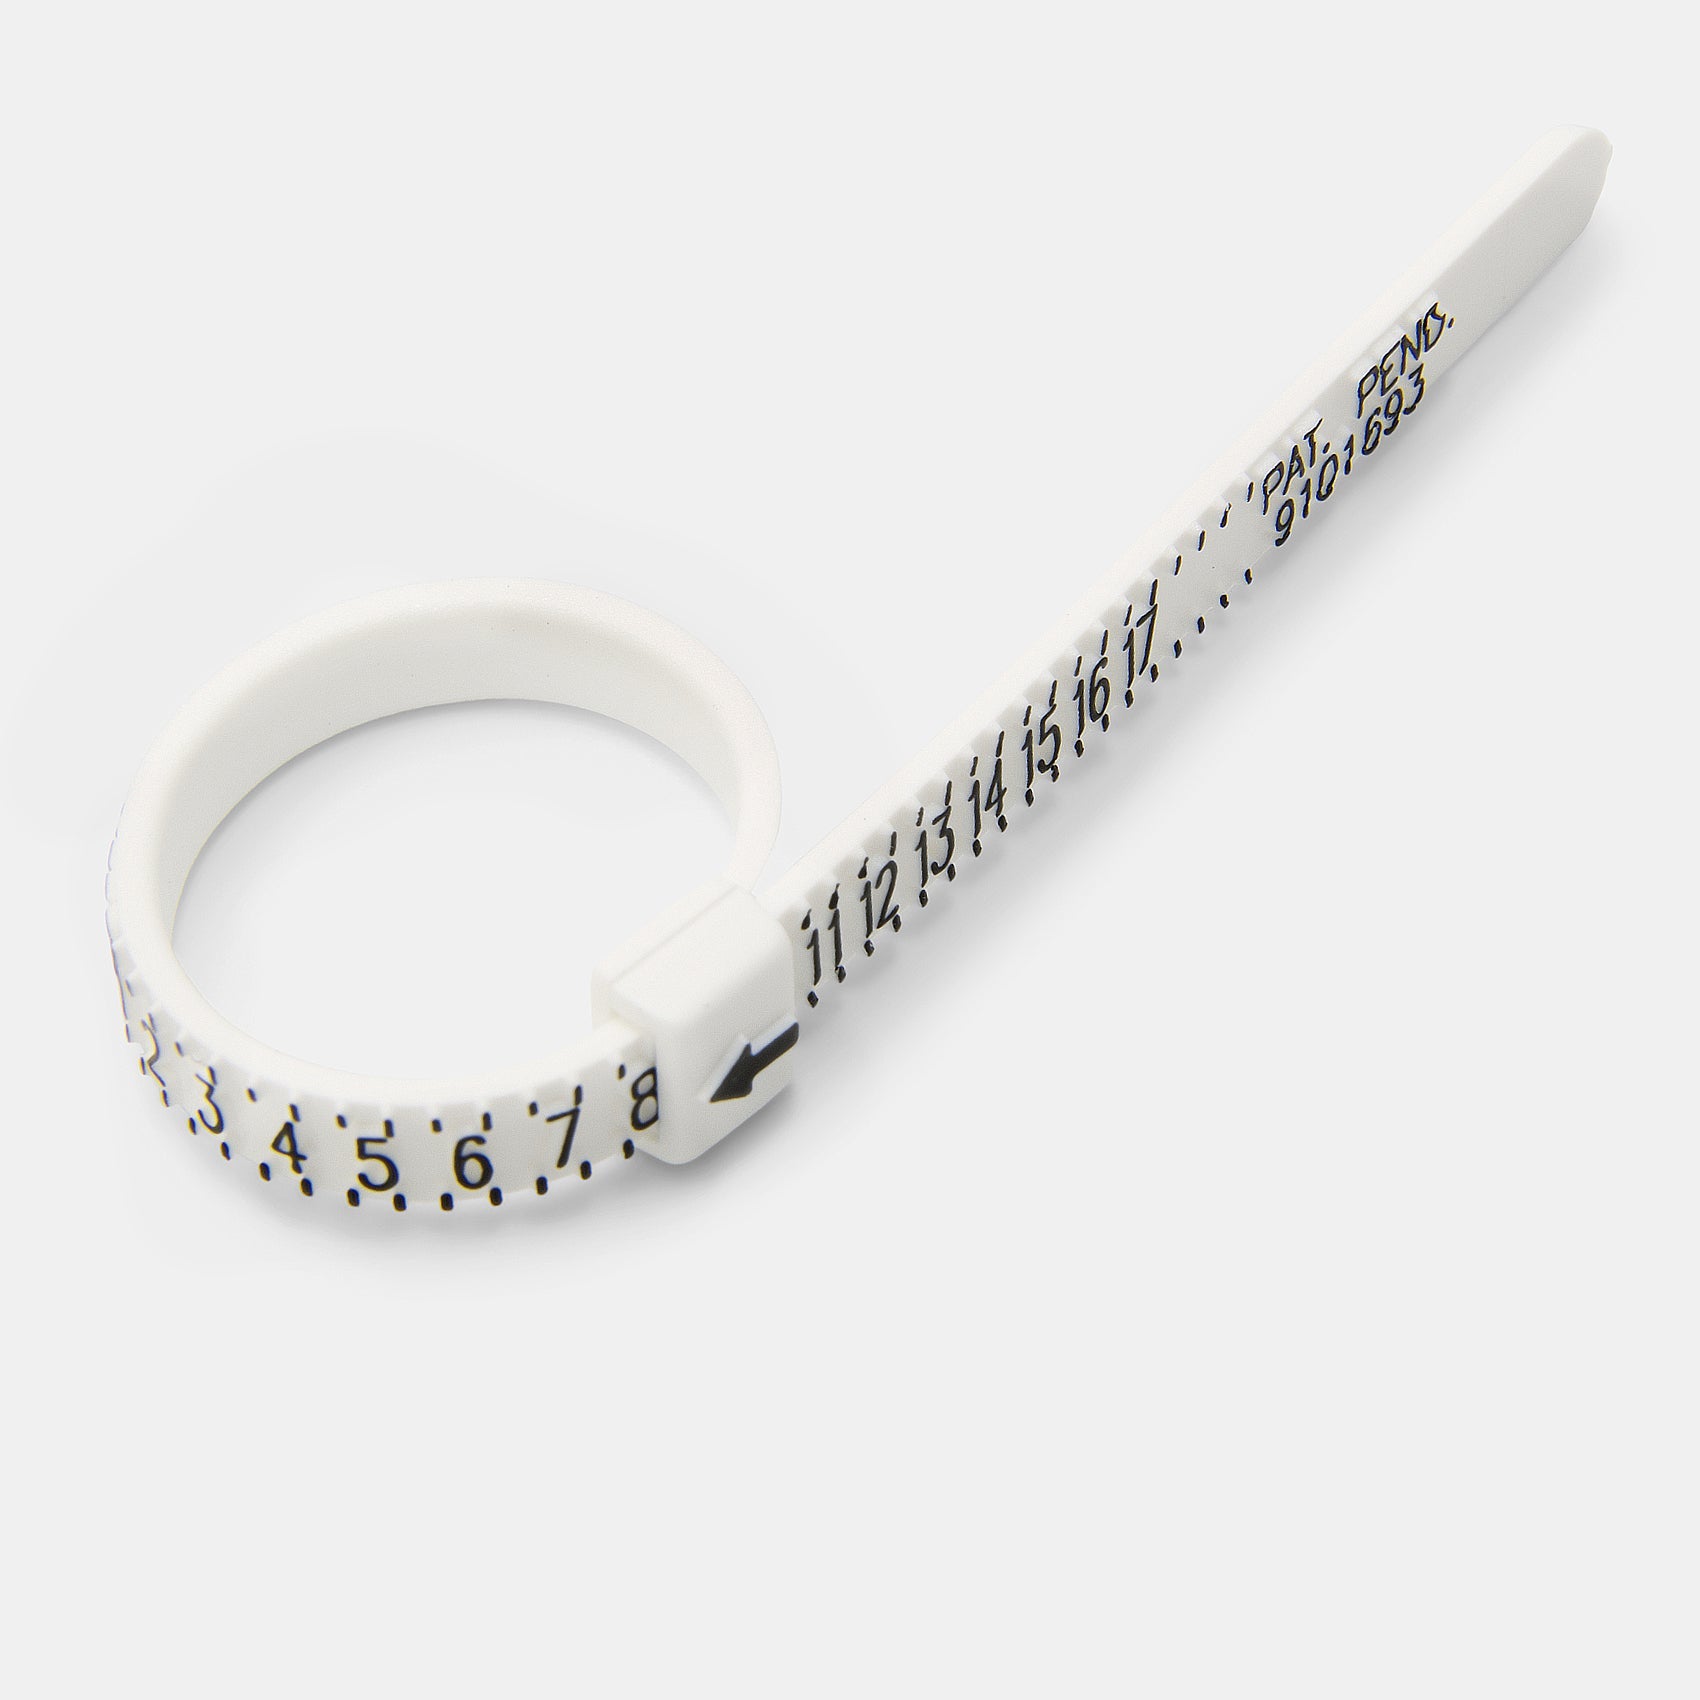 Ring sizing kit - Simone Walsh Jewellery Australia